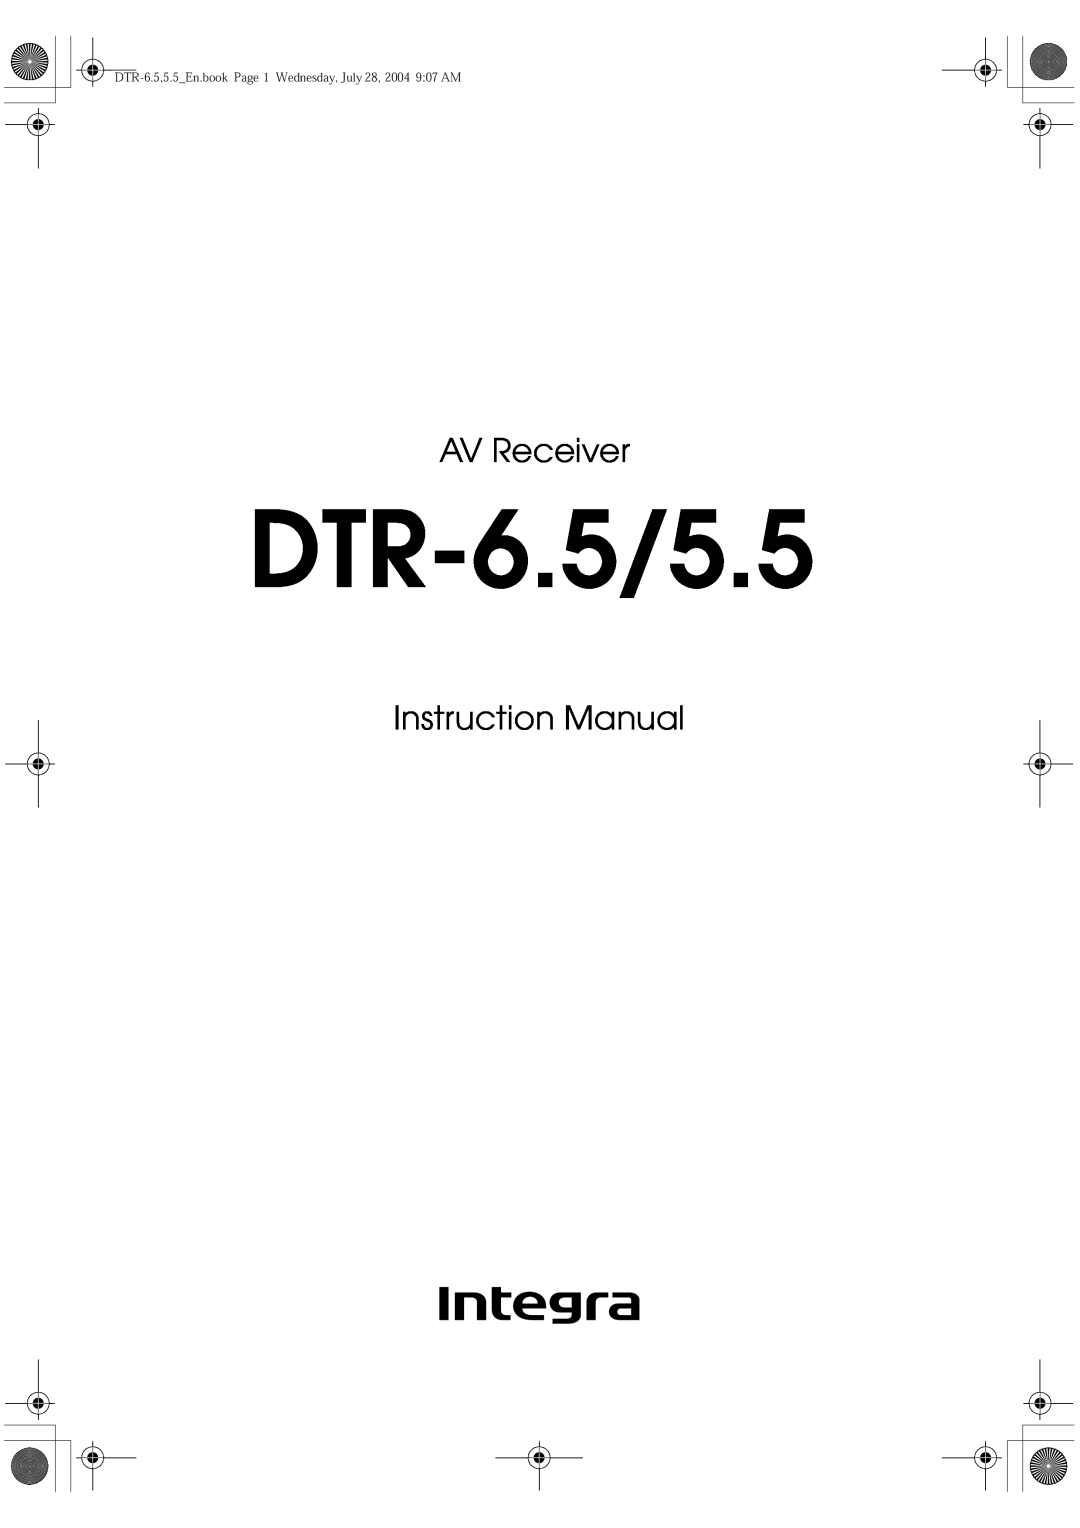 Integra DTR-5.5 instruction manual DTR-6.5/5.5, AV Receiver, Instruction Manual 